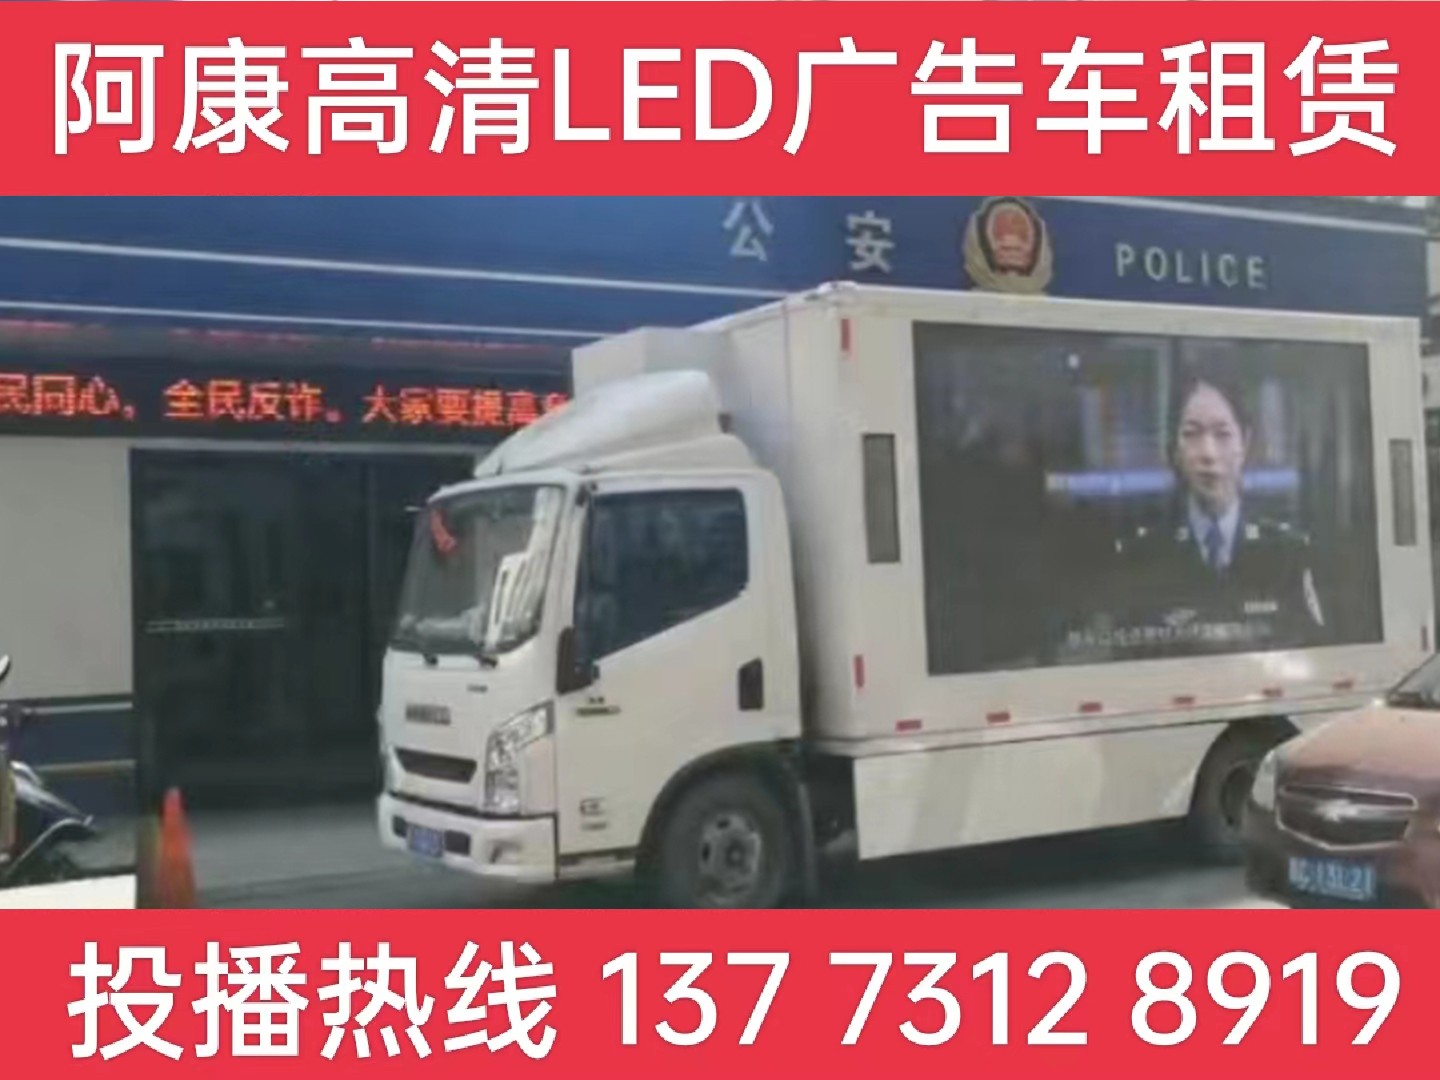 崇明岛LED广告车租赁-反诈宣传